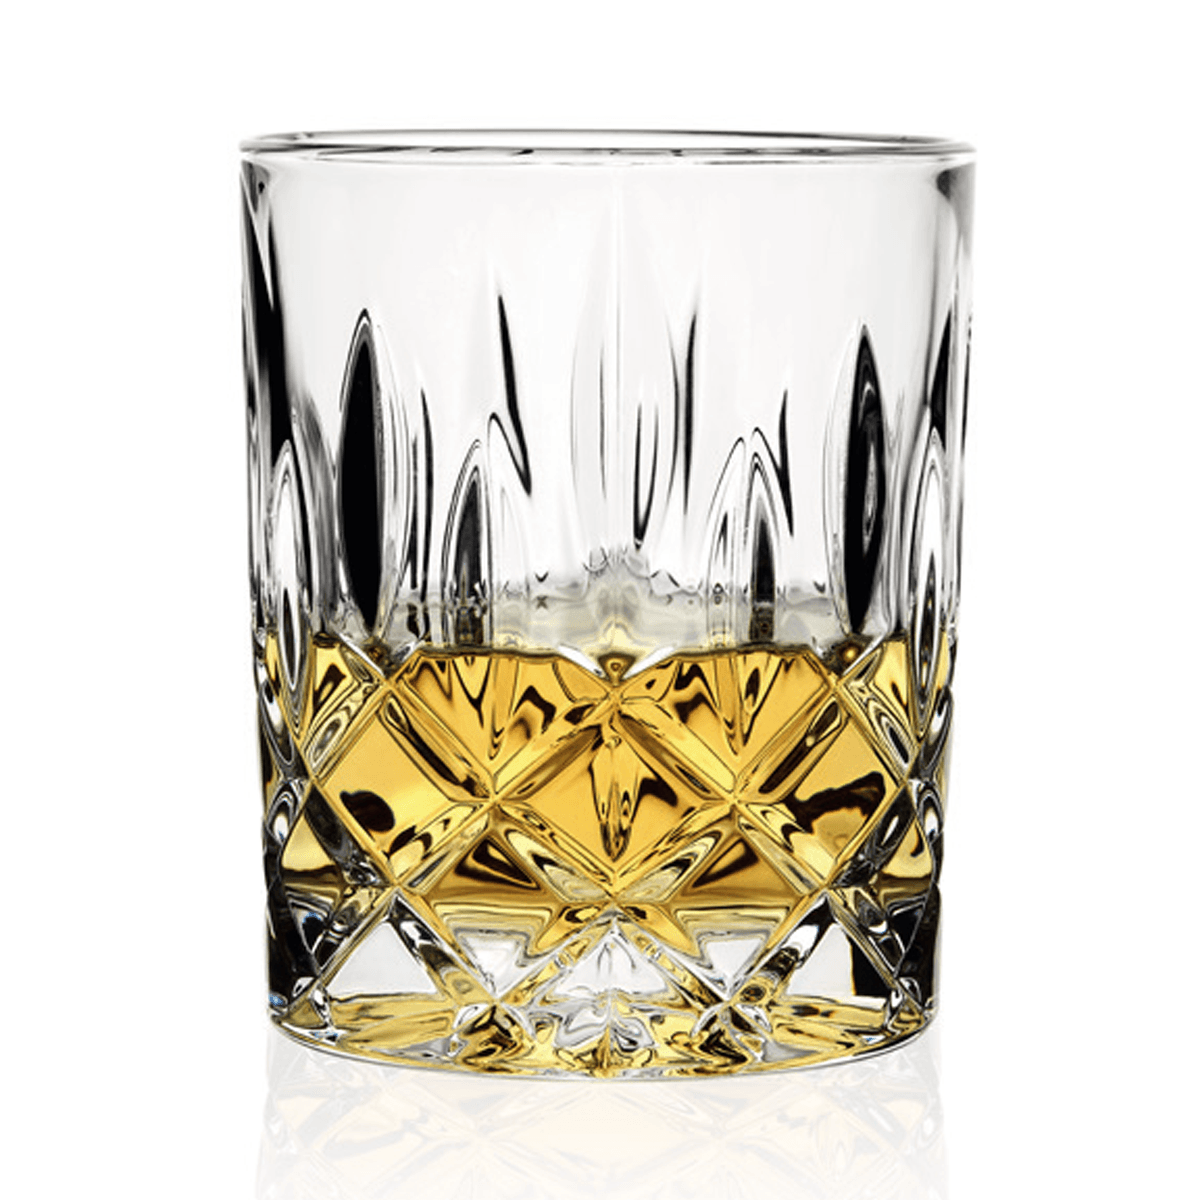  Kryształowe szklanki do whisky z kolekcji Klubu Domu Wina